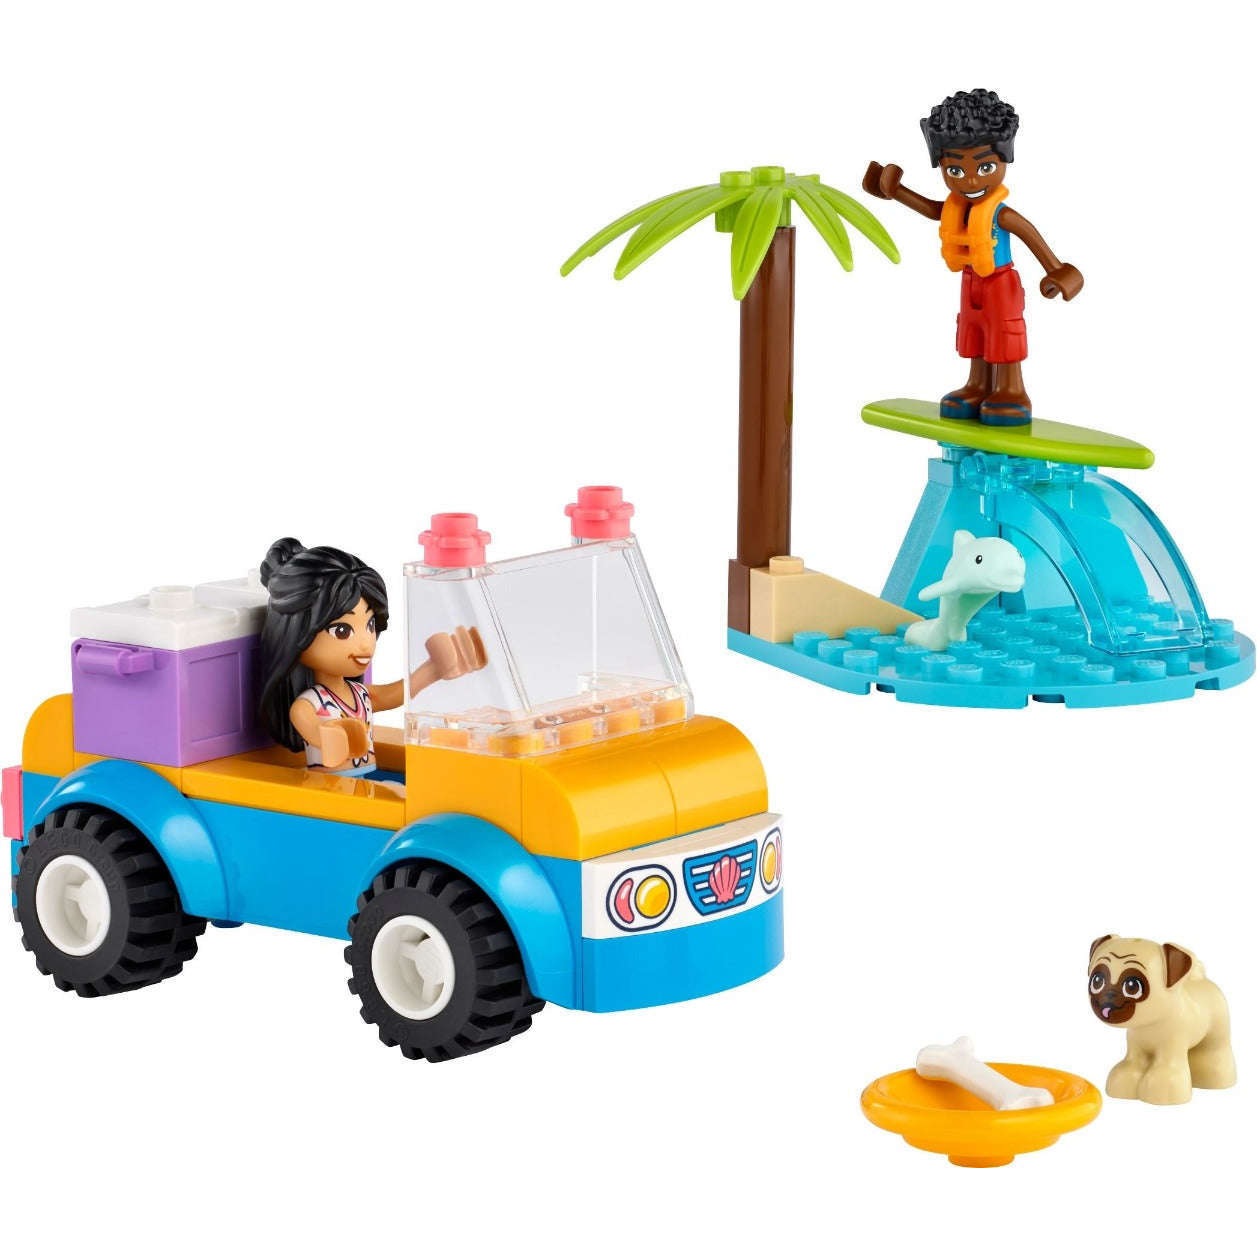 Toys N Tuck:Lego 41725 Friends Beach Buggy Fun,Lego Friends